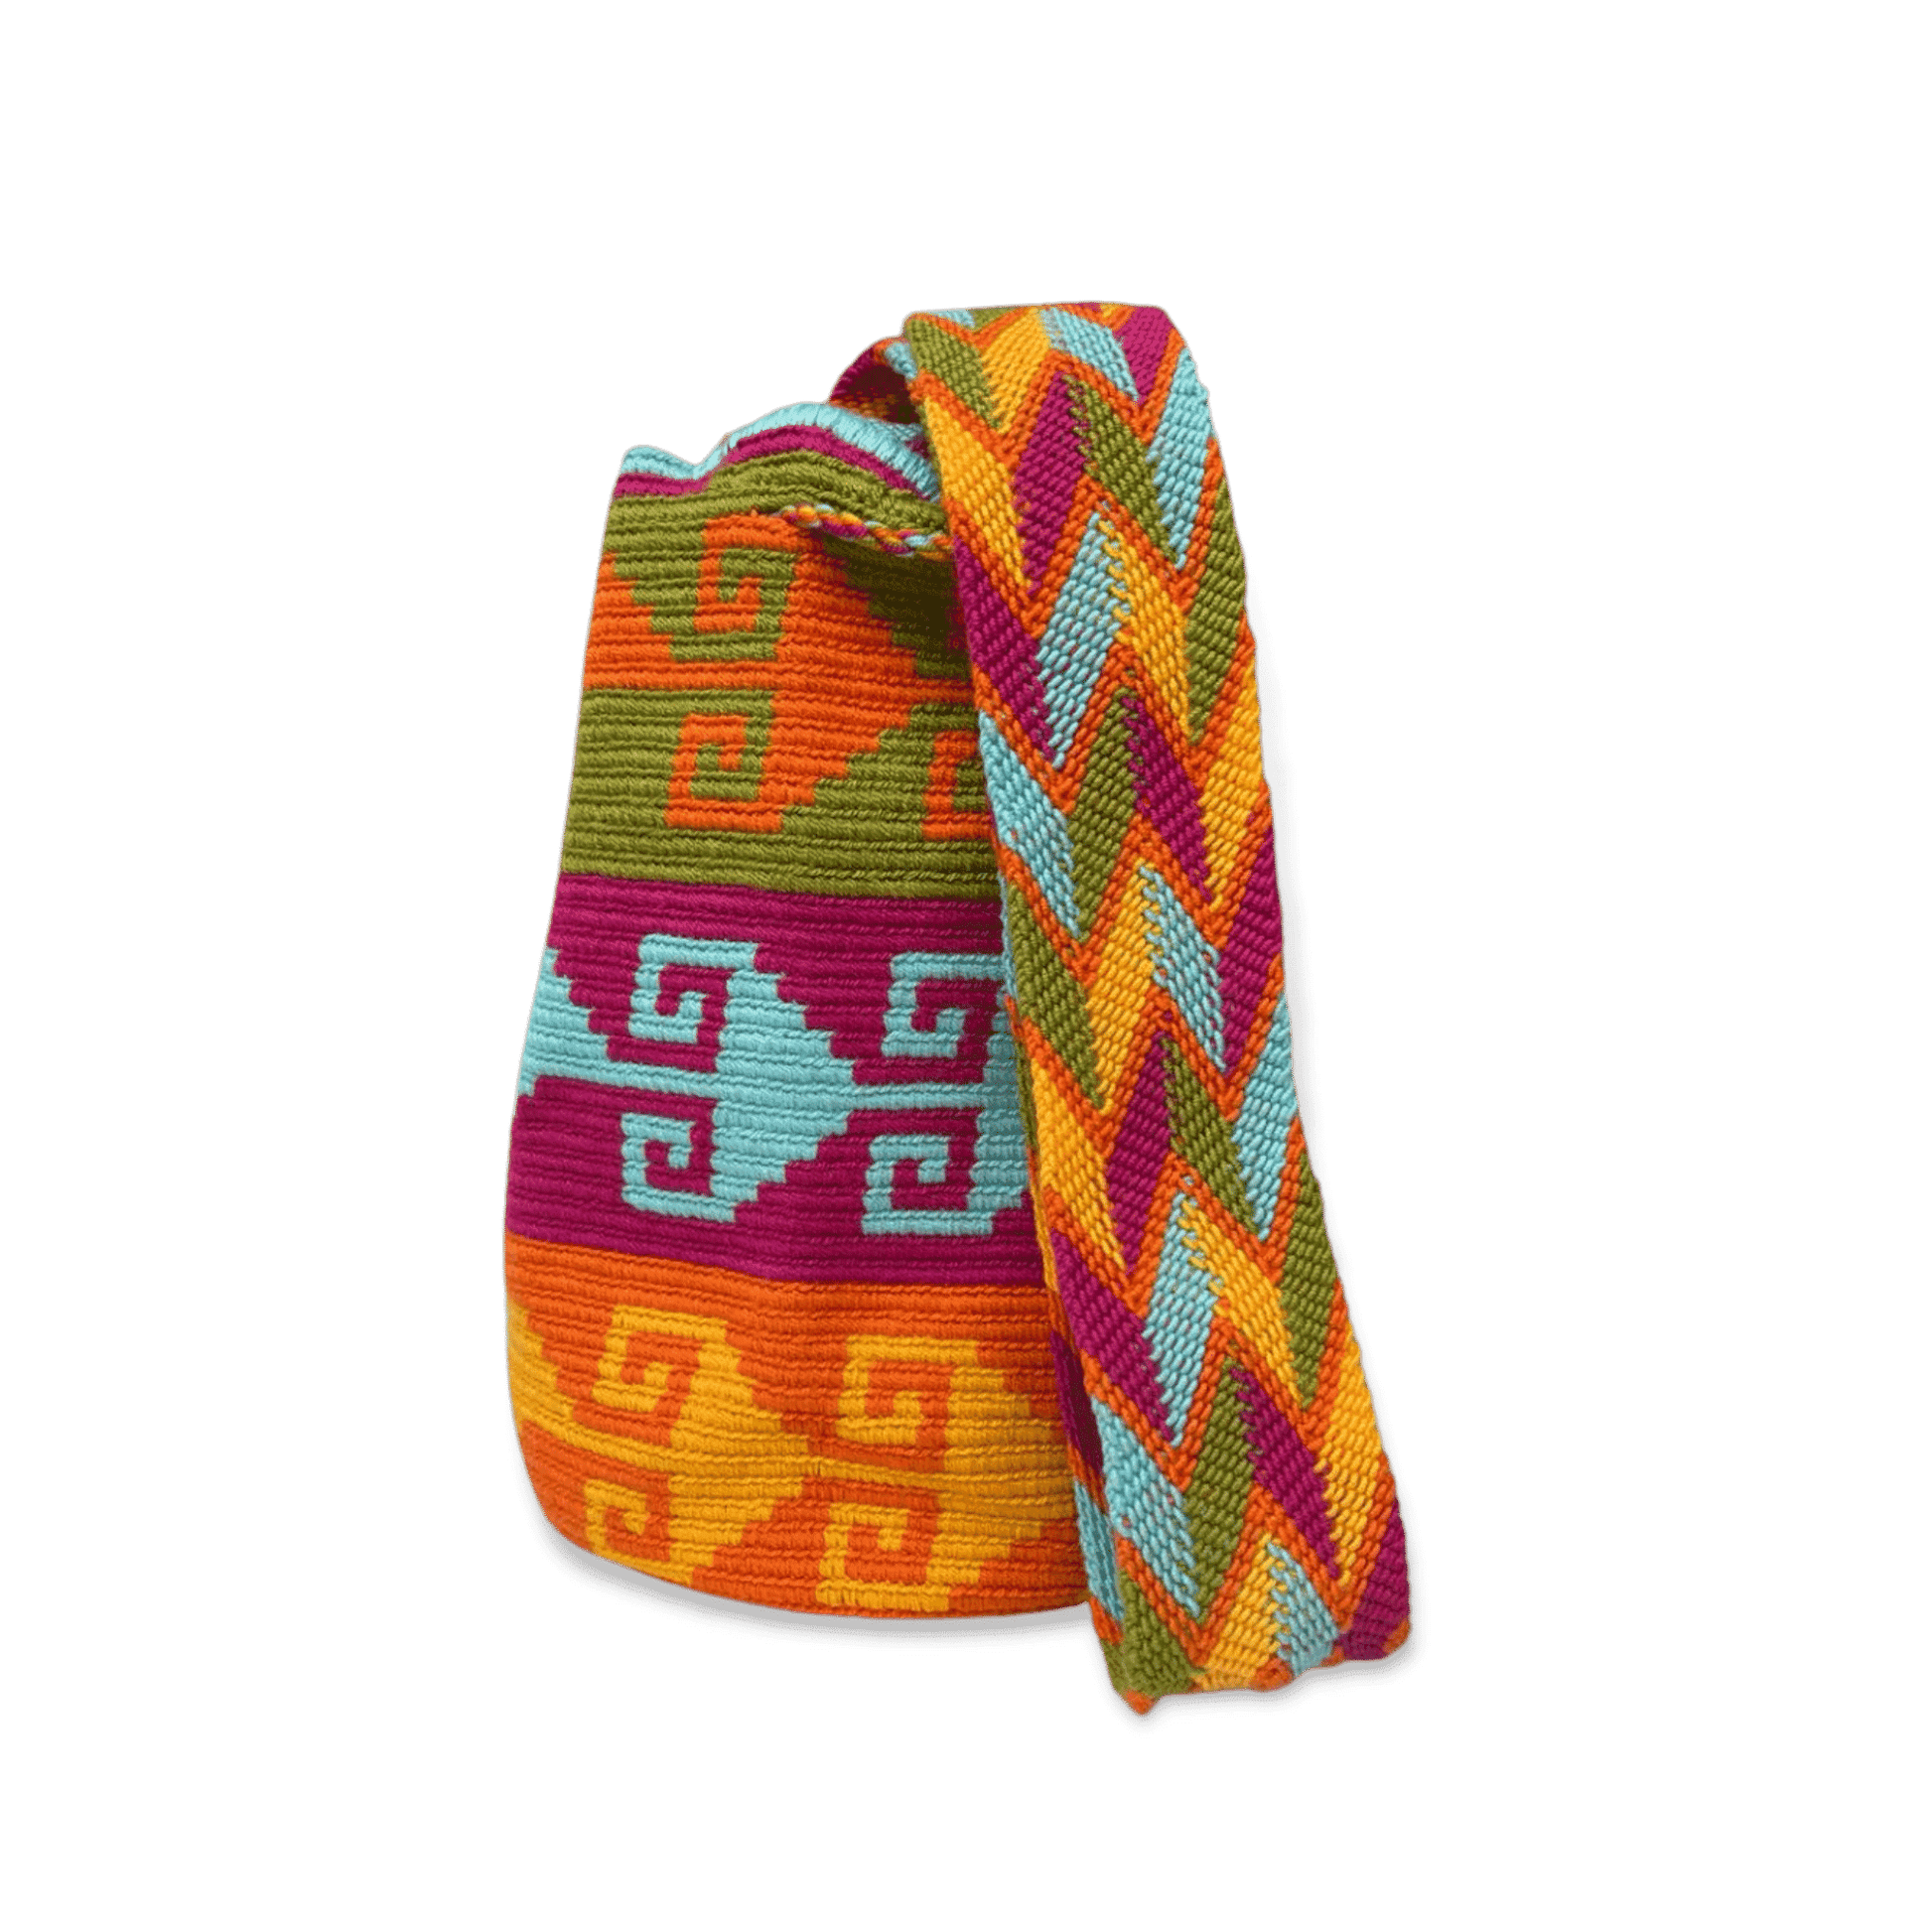 Mochila wayu original tejida a mano con un diseño precolombino de colores vivos